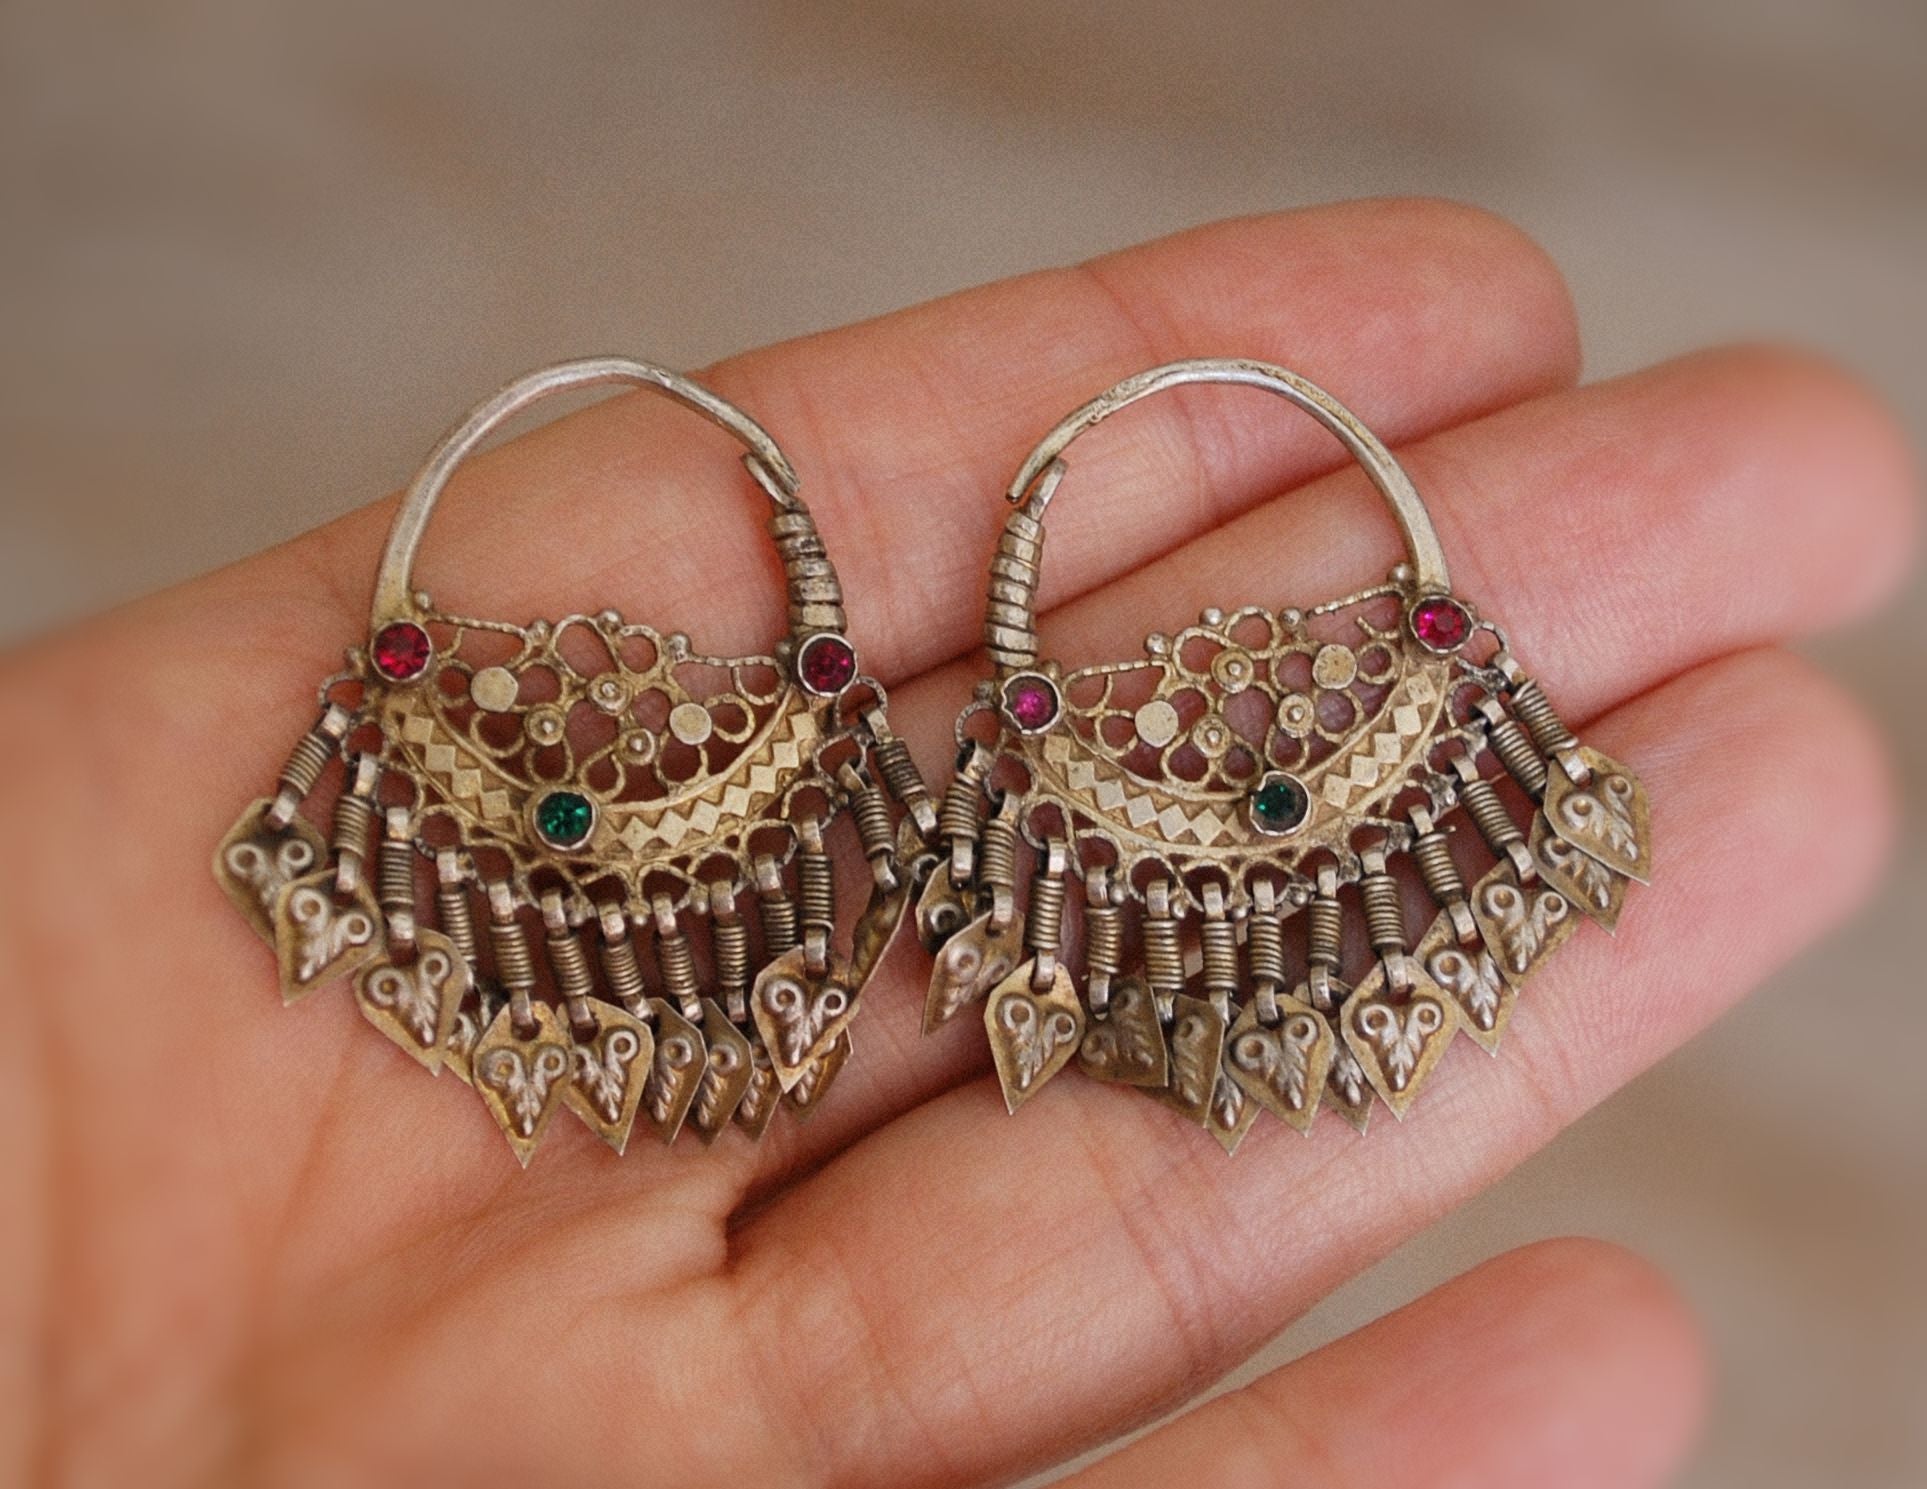 Antique Gilded Afghani Hoop Earrings with Tassels